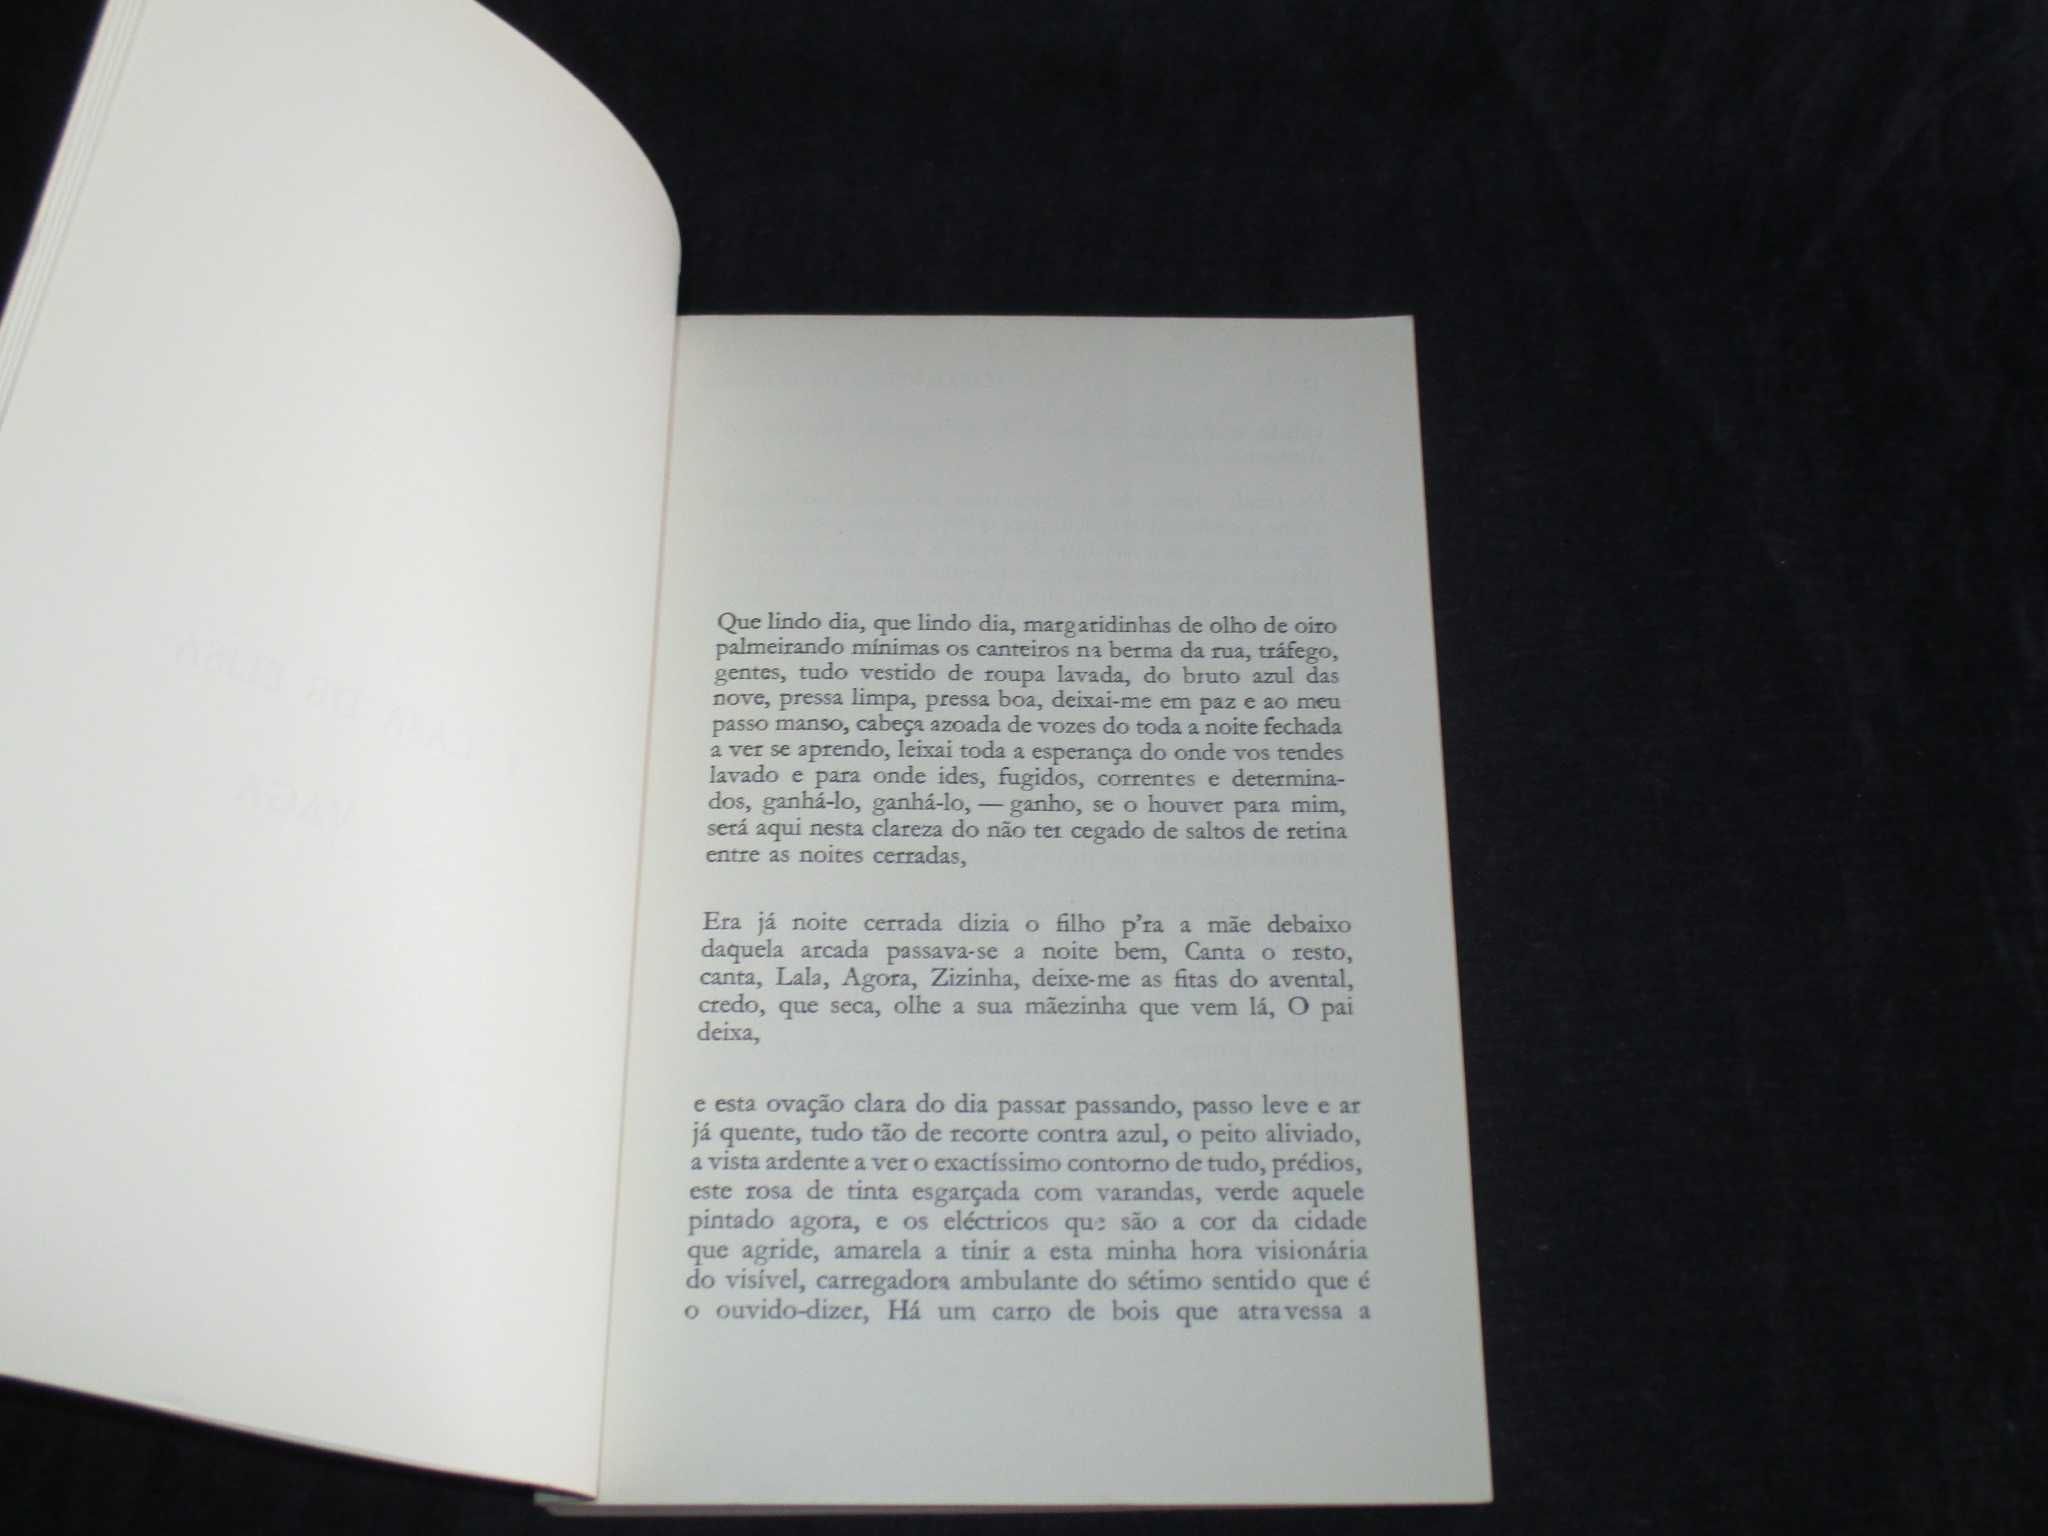 Livro Casas Pardas Maria Velho da Costa 1ª edição 1977